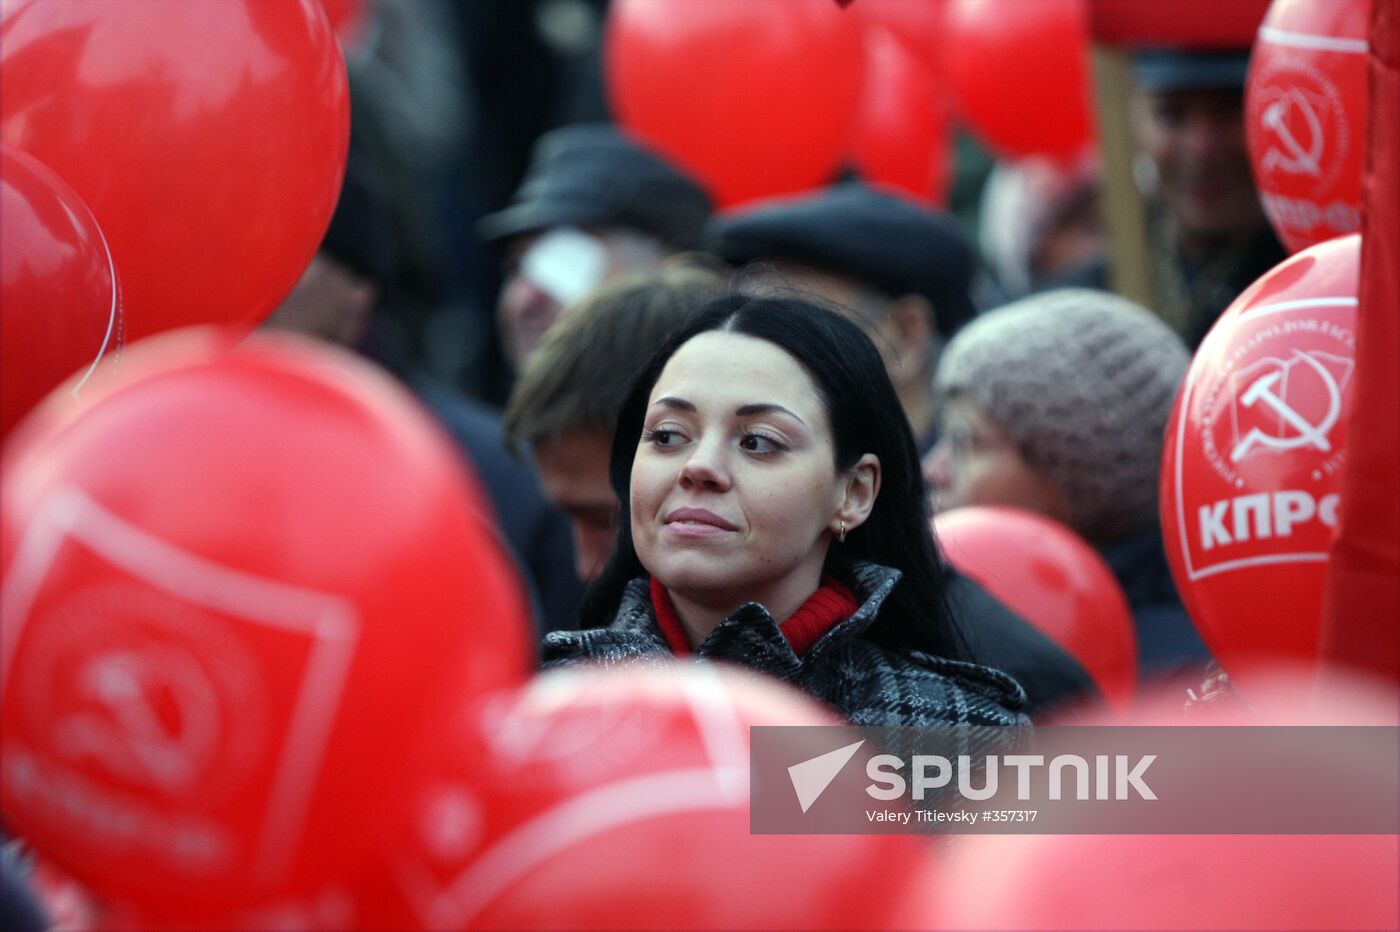 Communist rally in Novosibirsk